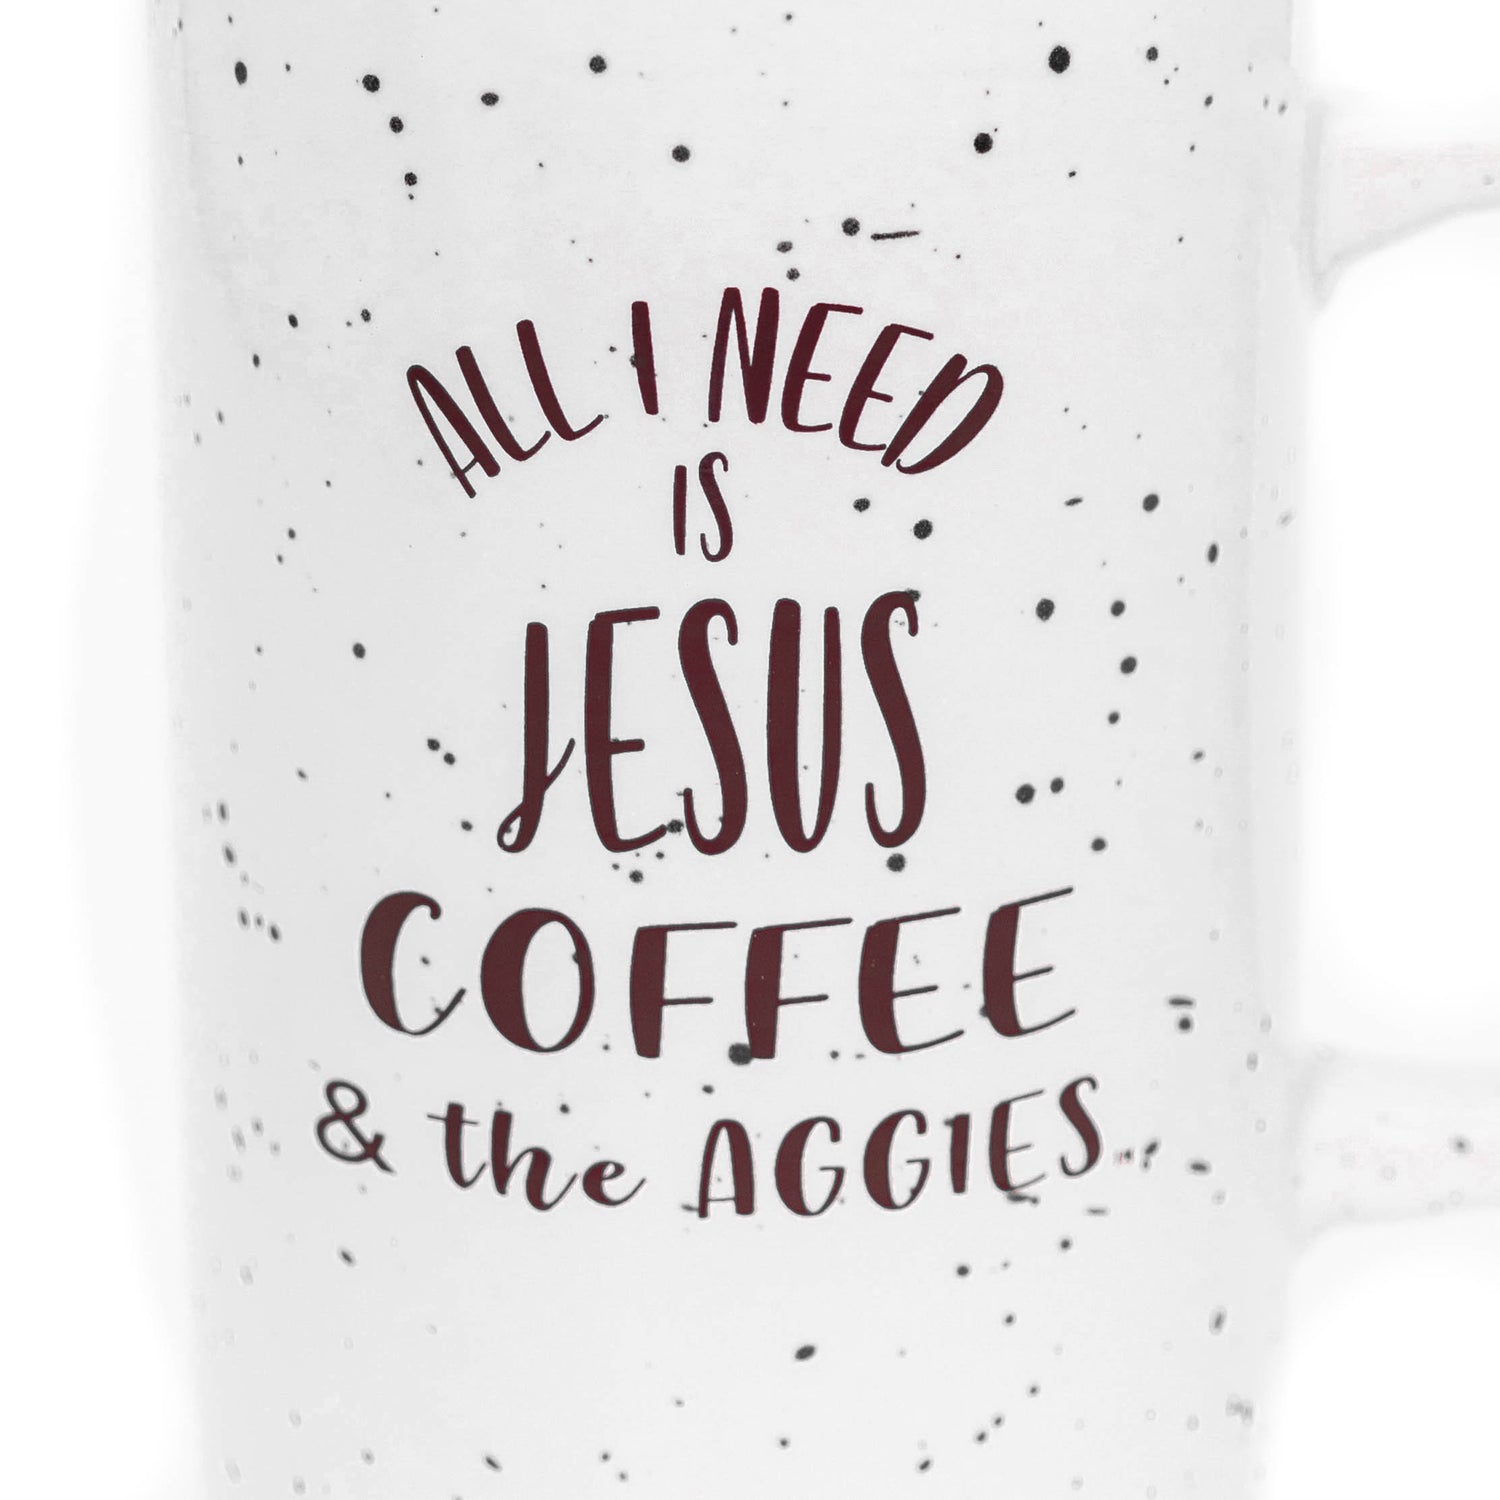 Texas A&M Jesus & Aggies Tall Coffee Mug 18Oz